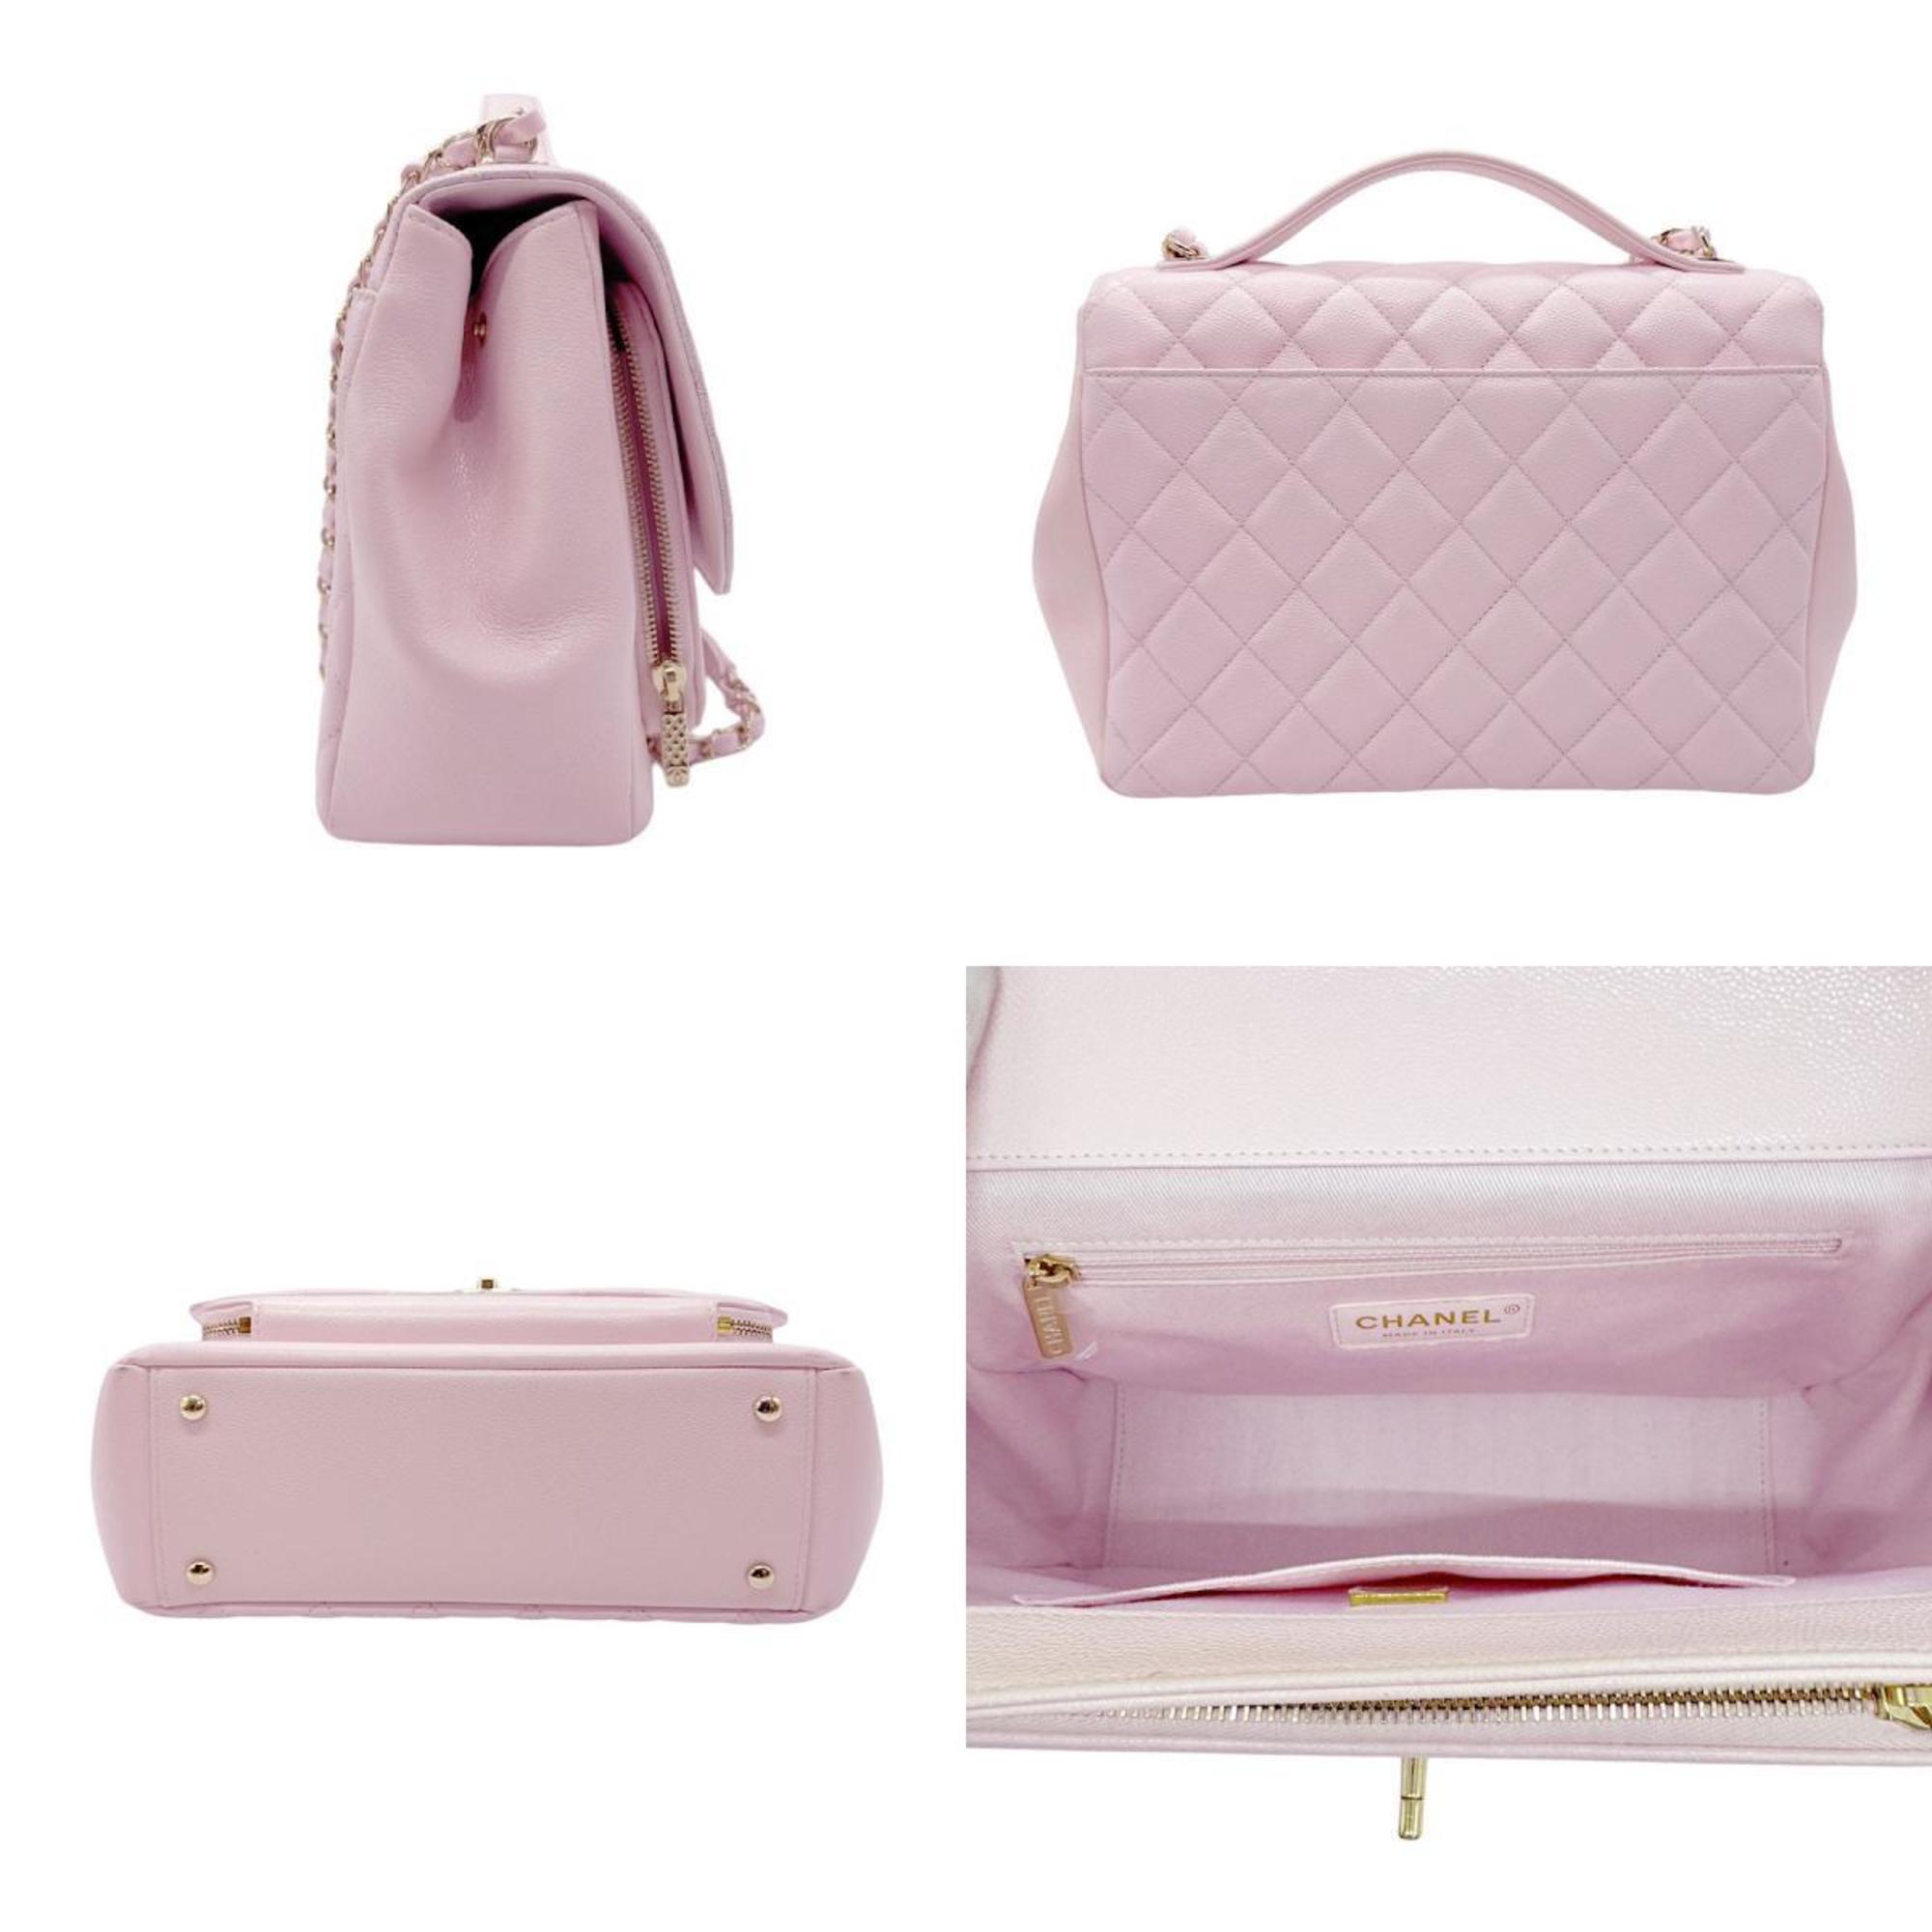 CHANEL Handbag Shoulder Bag Affinity Caviar Skin Leather Light Pink Women's z0702